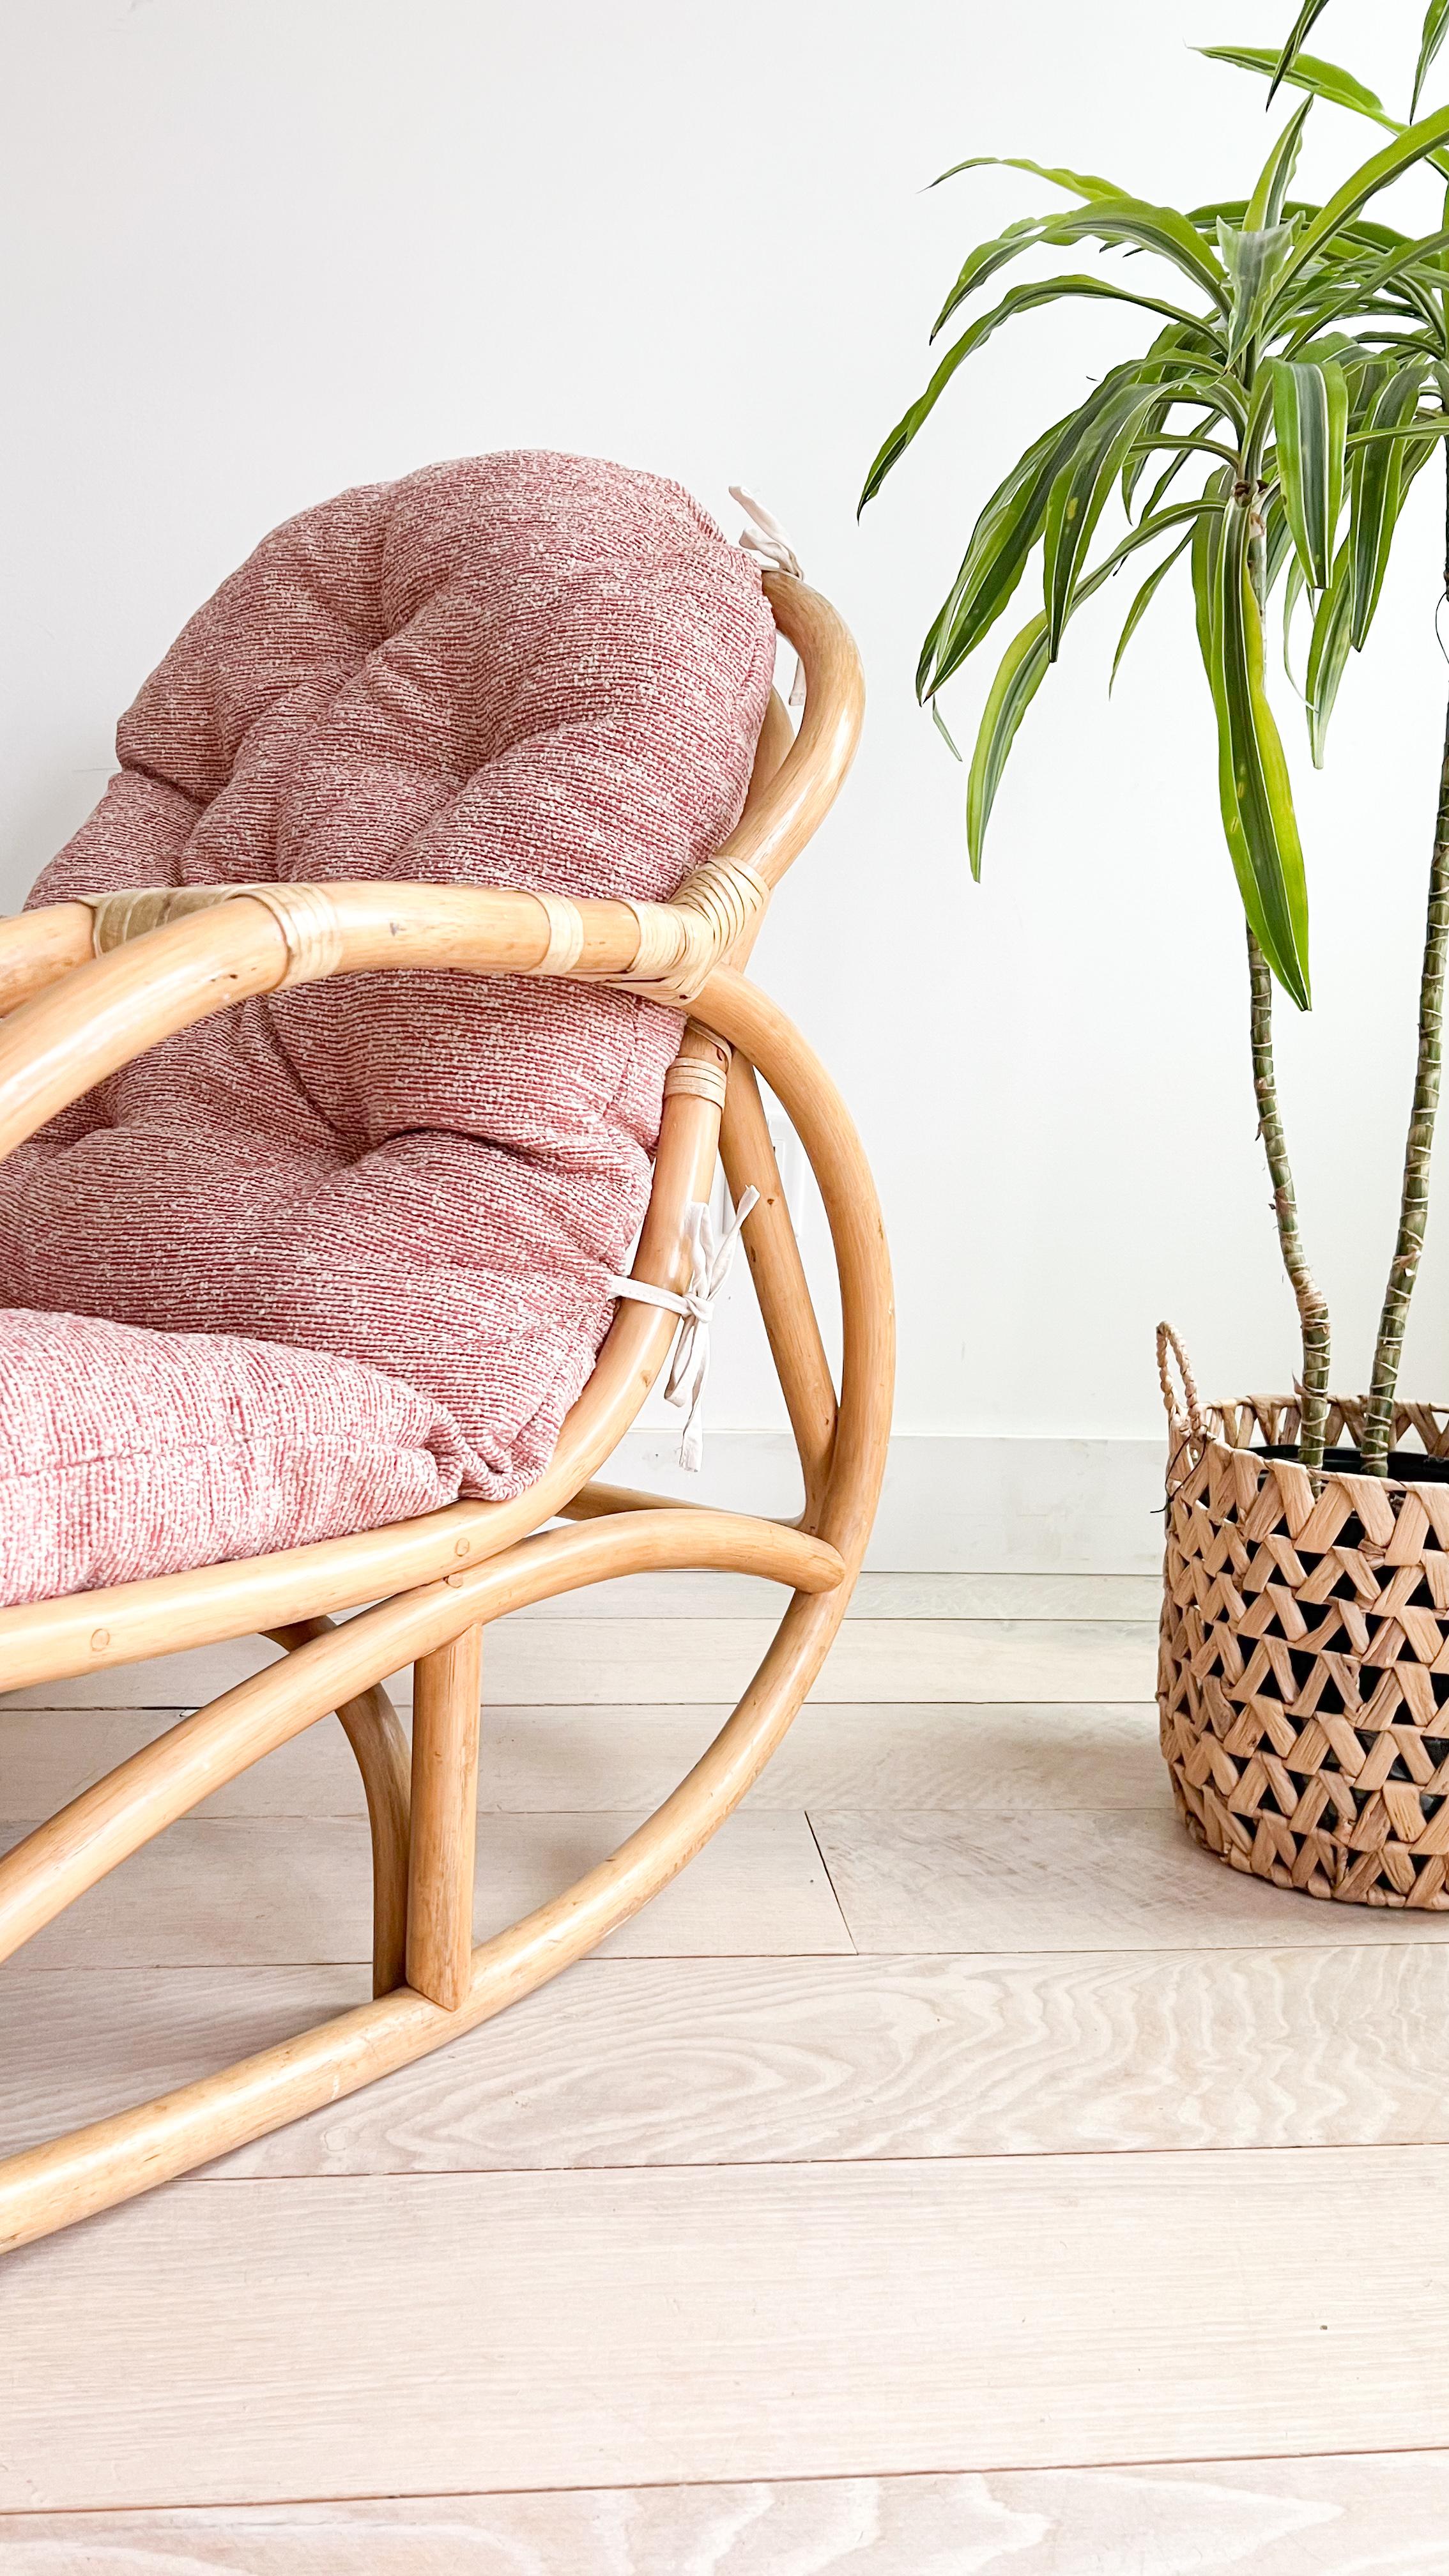 Améliorez votre espace avec l'attrait intemporel de ces charmantes chaises à bascule en rotin, inspirées par les designs emblématiques de Viggo Boesen. Avec leur revêtement rose et blanc, ces chaises respirent la chaleur et le style, et sont